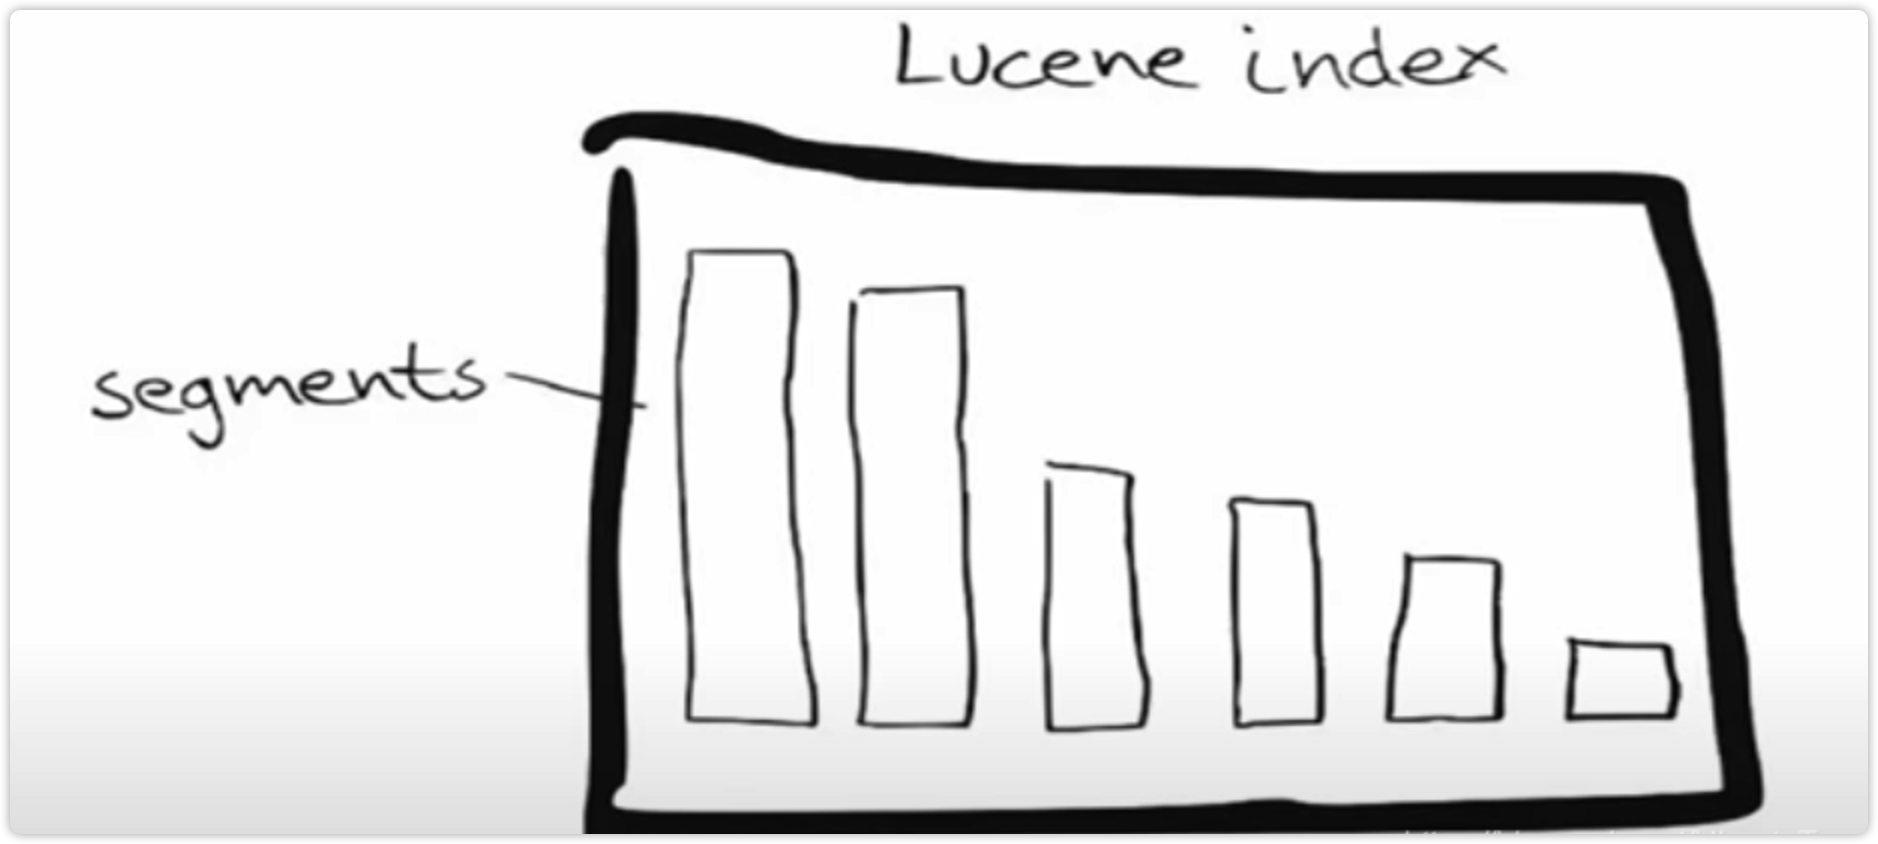 lucene_index